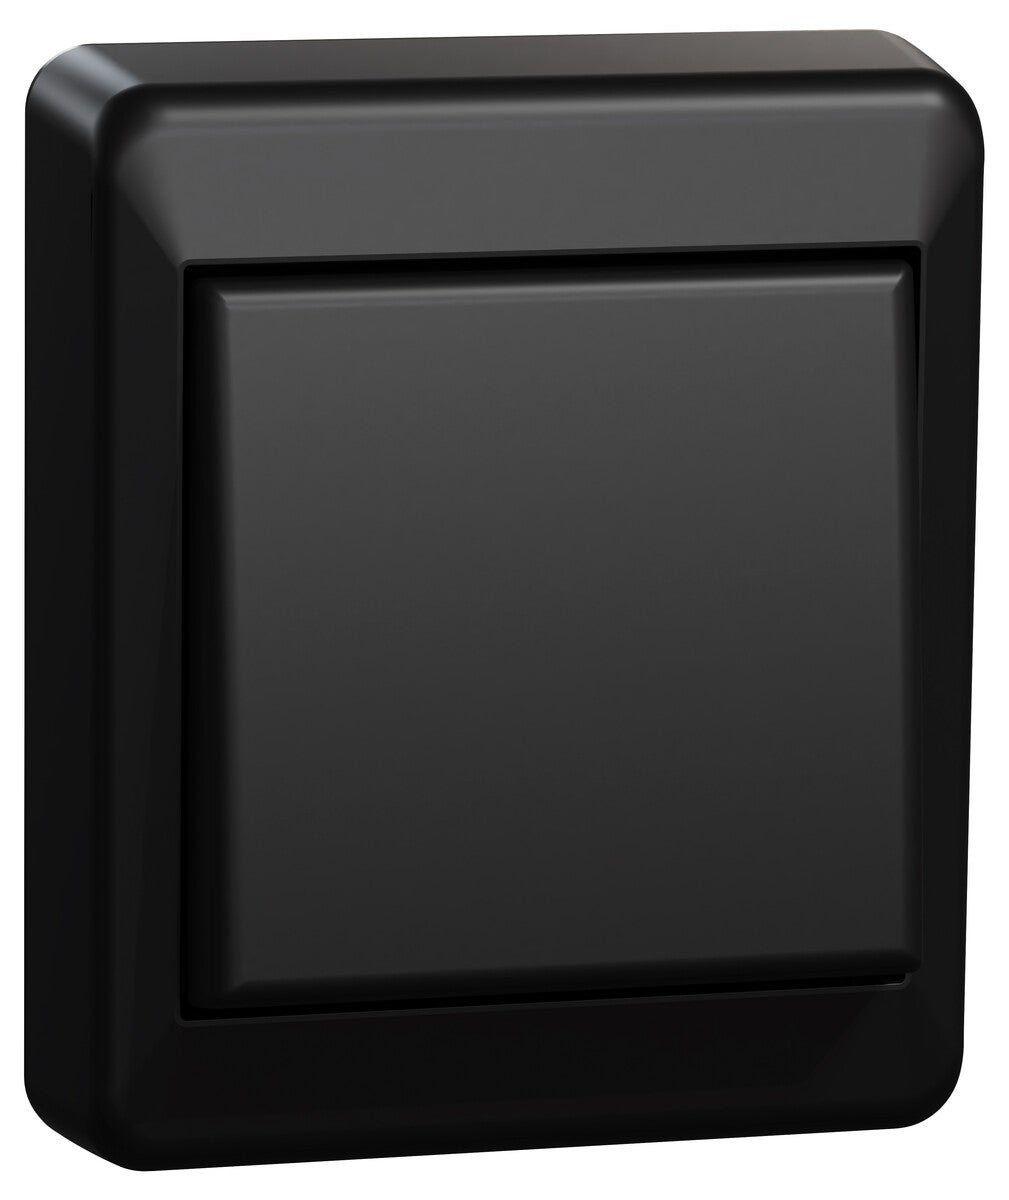 Elko RS utanpåliggande strömbrytare 1-pol/trapp, svart